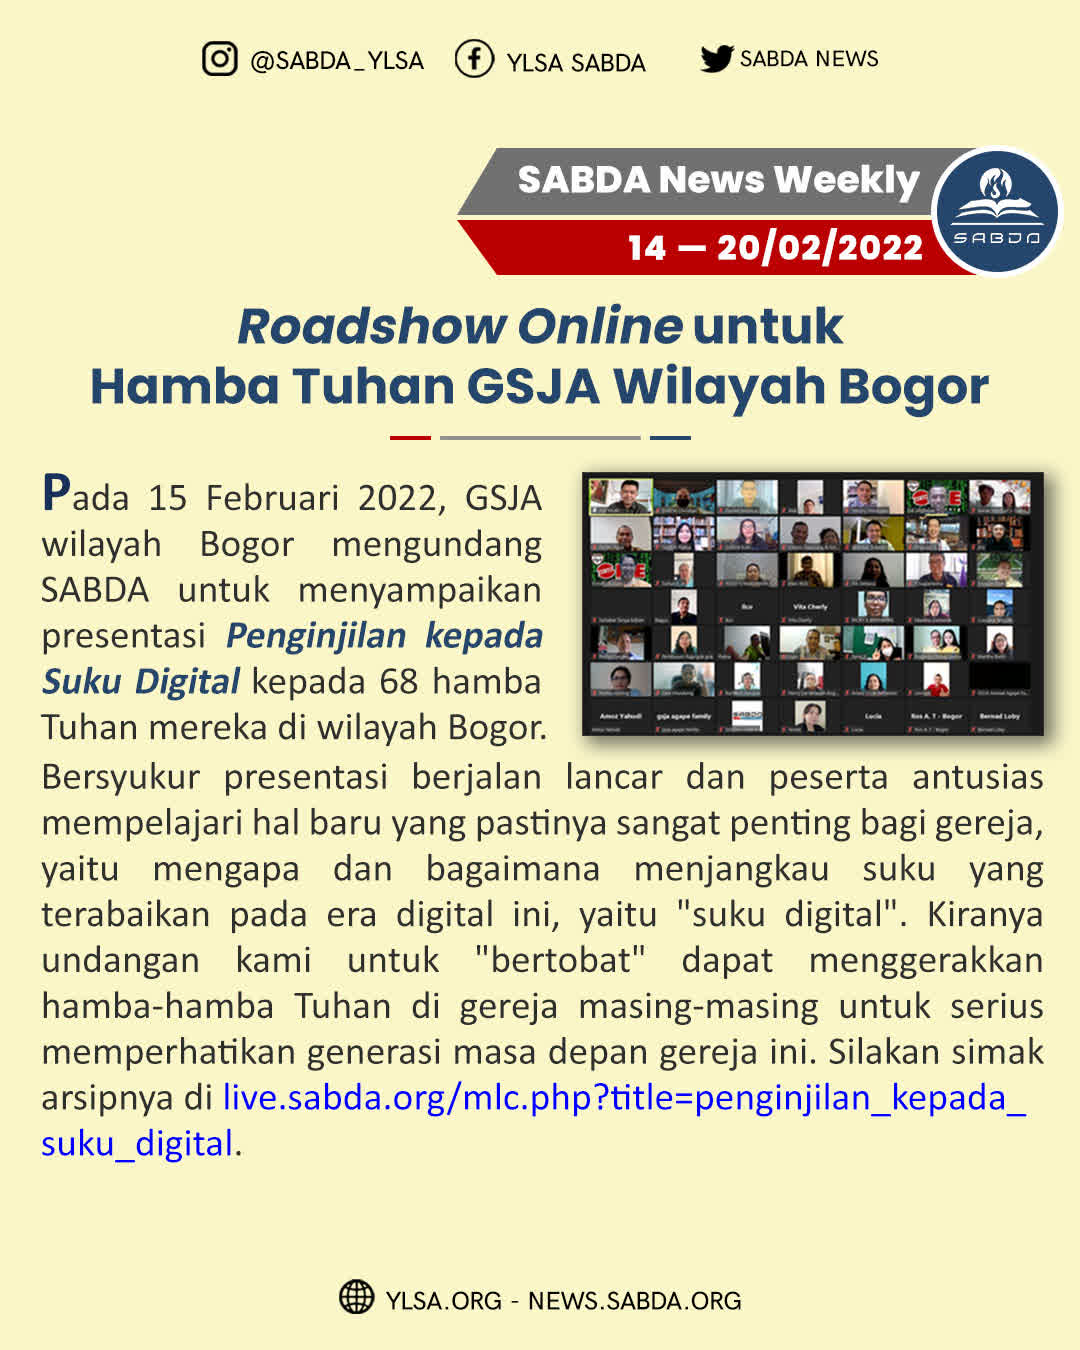 Roadshow Online HT GSJA Bogor